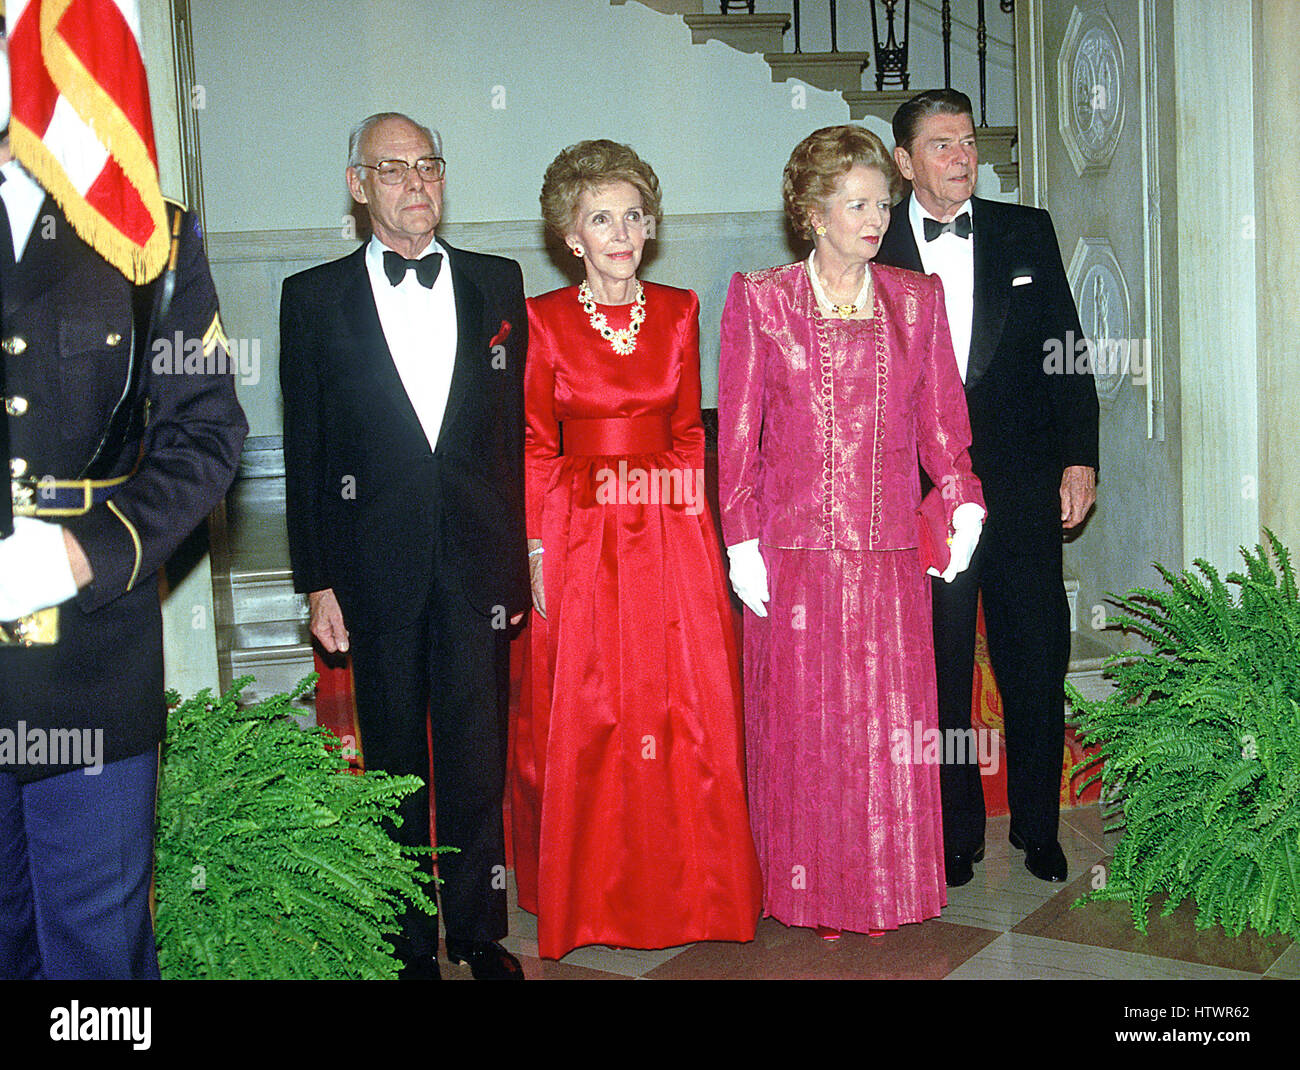 Denis Thatcher, première dame Nancy Reagan, le premier ministre Margaret Thatcher de Grande-Bretagne, et le président des États-Unis Ronald Reagan posent pour la photo "grand escalier" à la Maison Blanche, à Washington, D.C. avant le dîner à l'honneur du Premier Ministre Banque D'Images